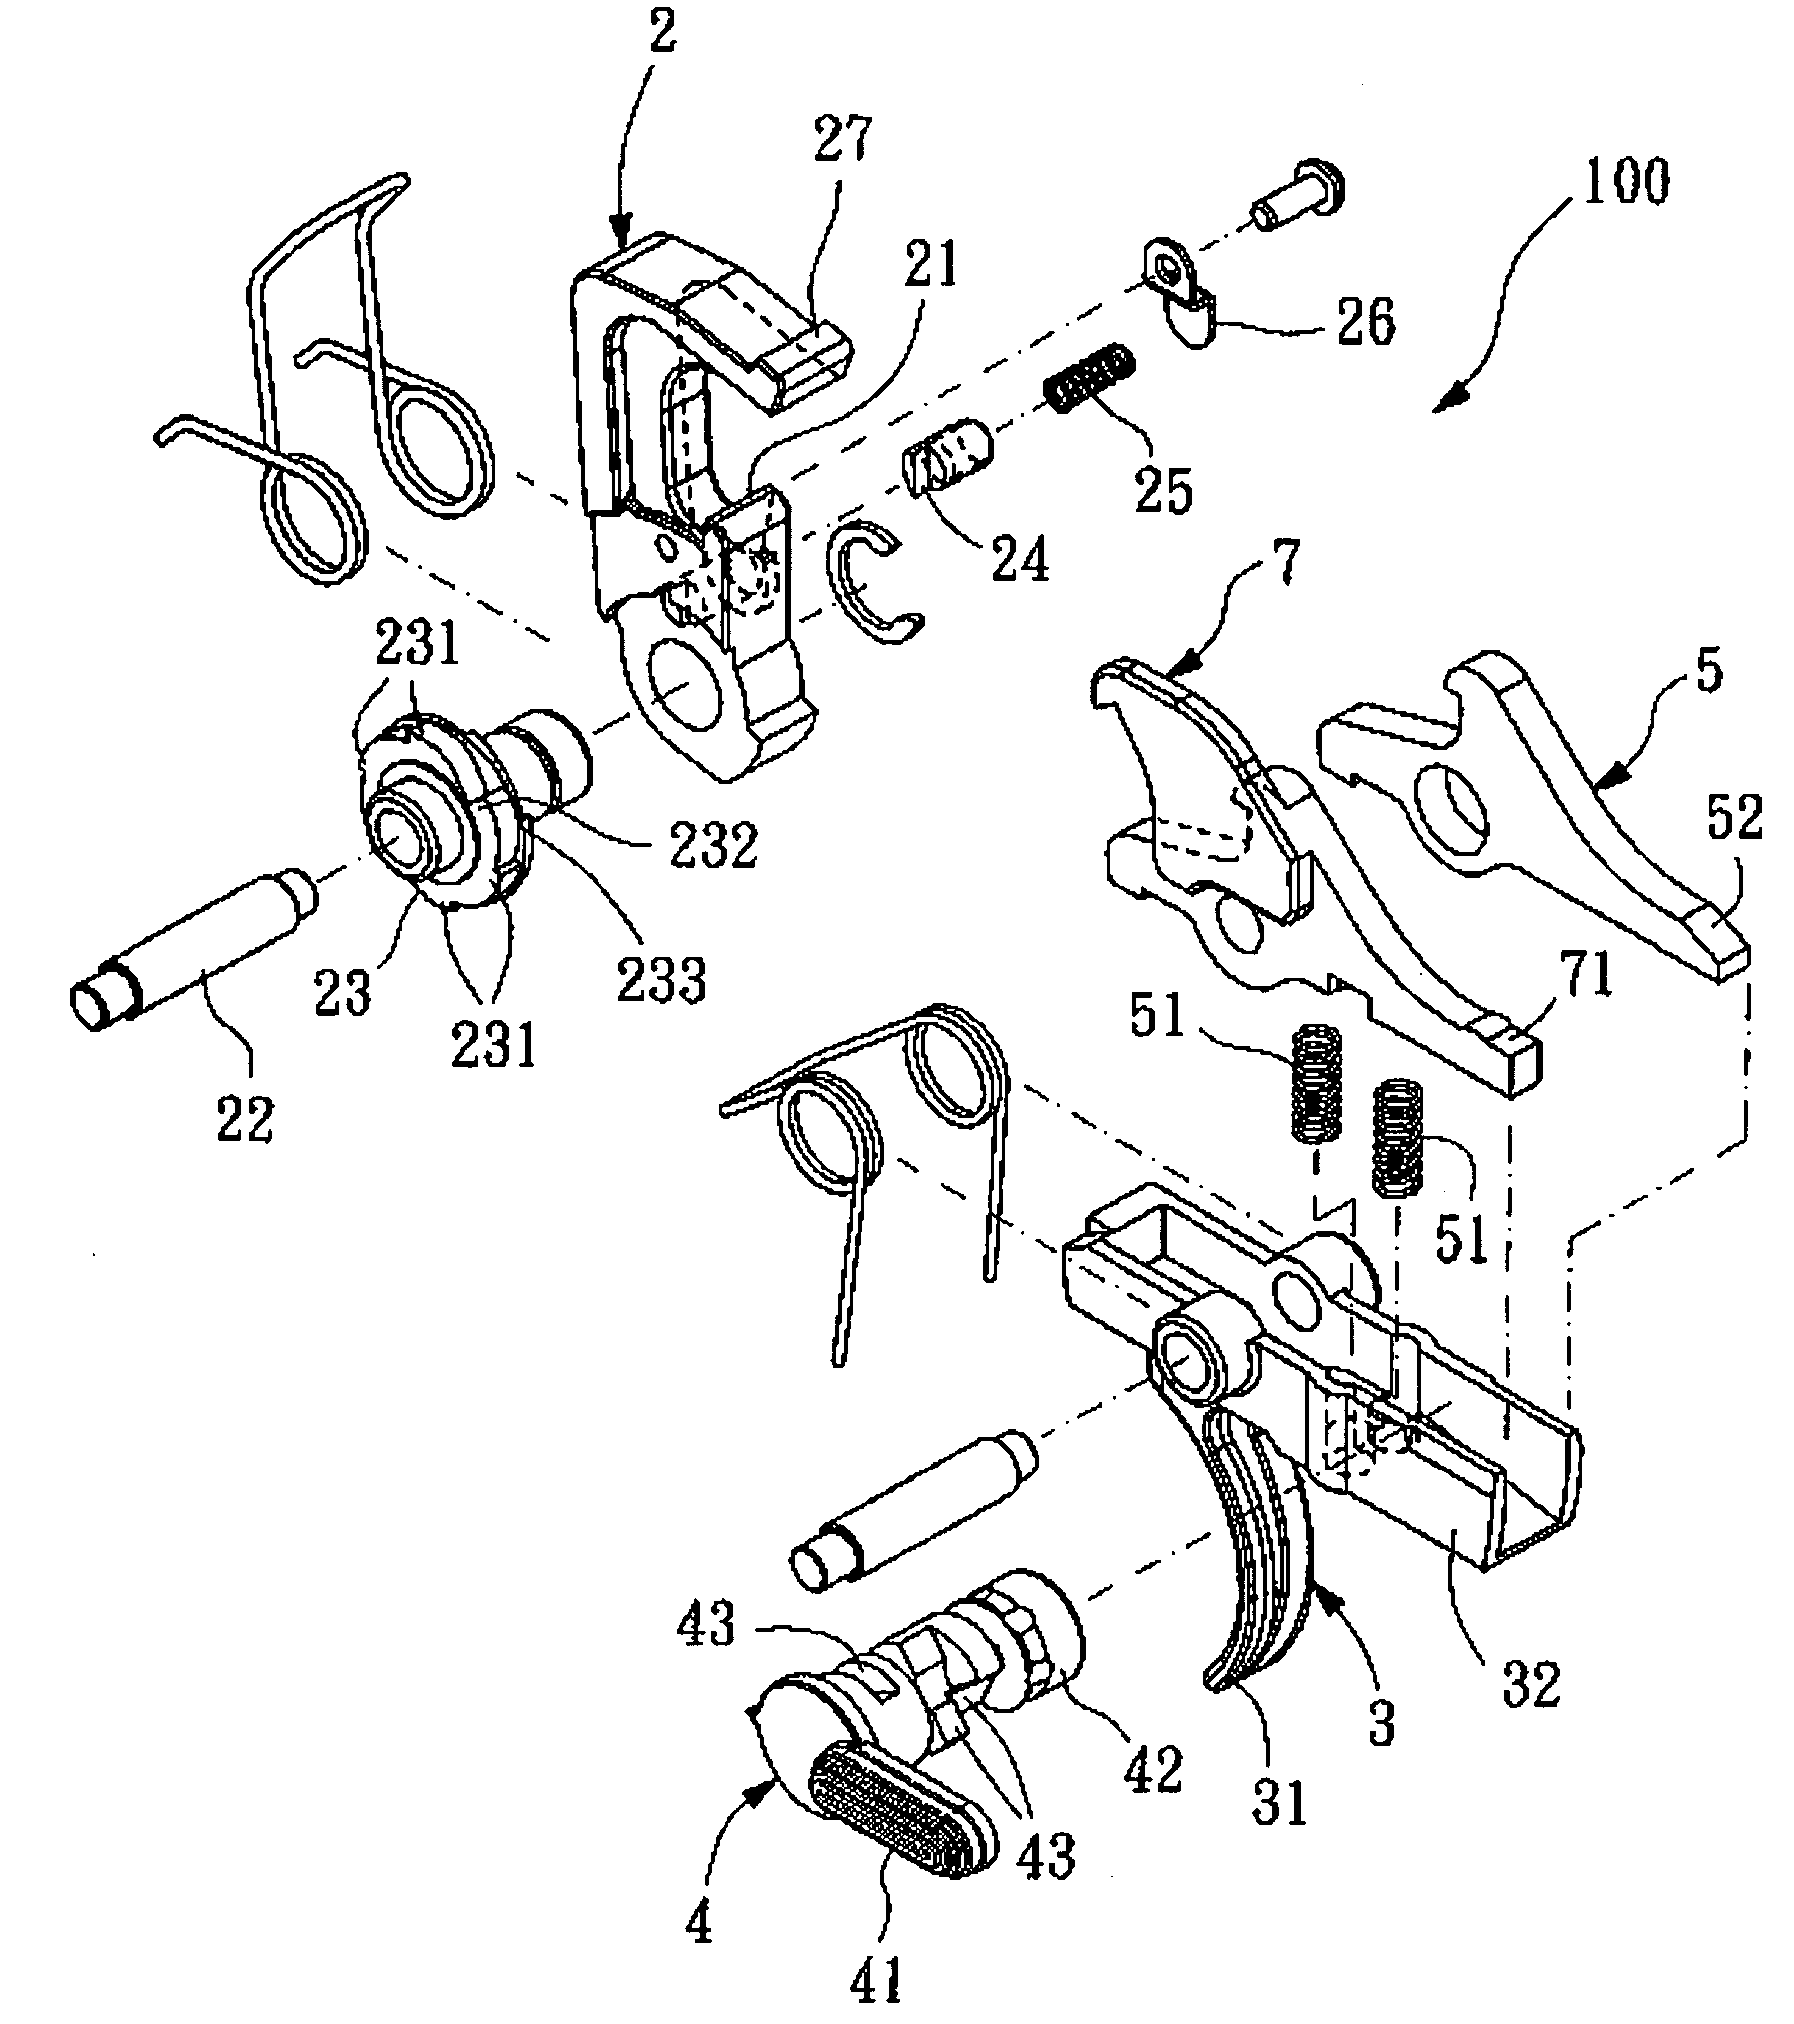 Firing control mechanism for toy gun